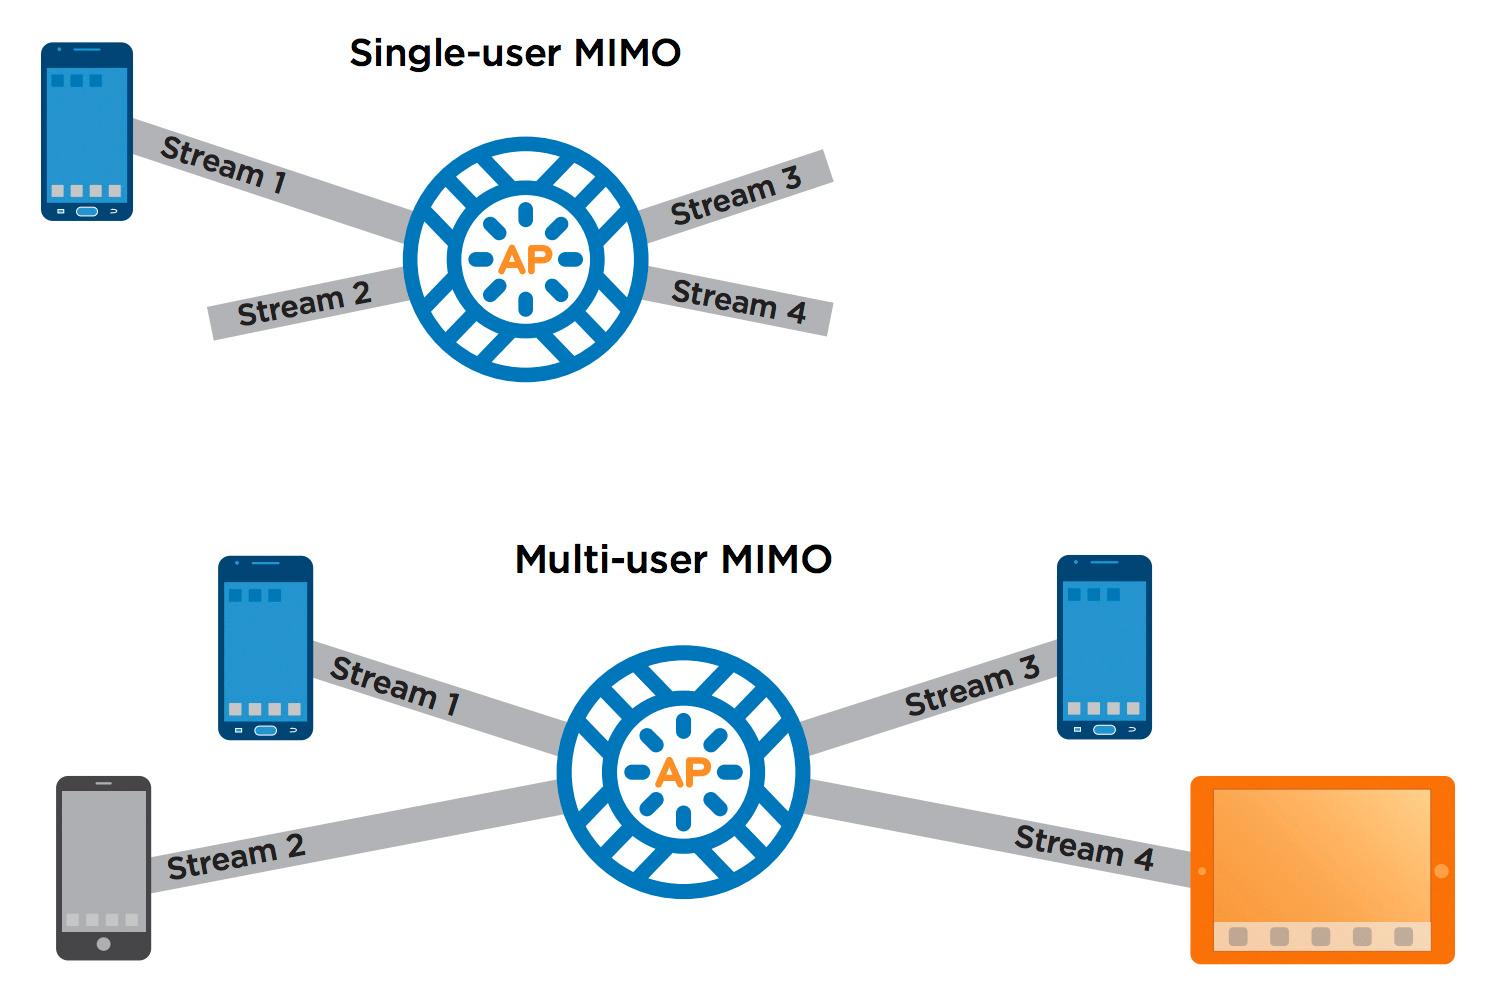 Slik forklarer nettverksleverandøren Xirrus forskjellen på SU-MIMO og MU-MIMO. Det øverste aksesspunktet har en 4x4-antennekonfigurasjon, men kommuniserer med en 1x1-klient. Dermed er det tre datastrømmer som «går til spille» før aksesspunktet går videre til neste klient. Det nederste aksesspunktet har en 4x4-antennekonfigurasjon og kommuniserer med fire 1x1-klienter samtidig.